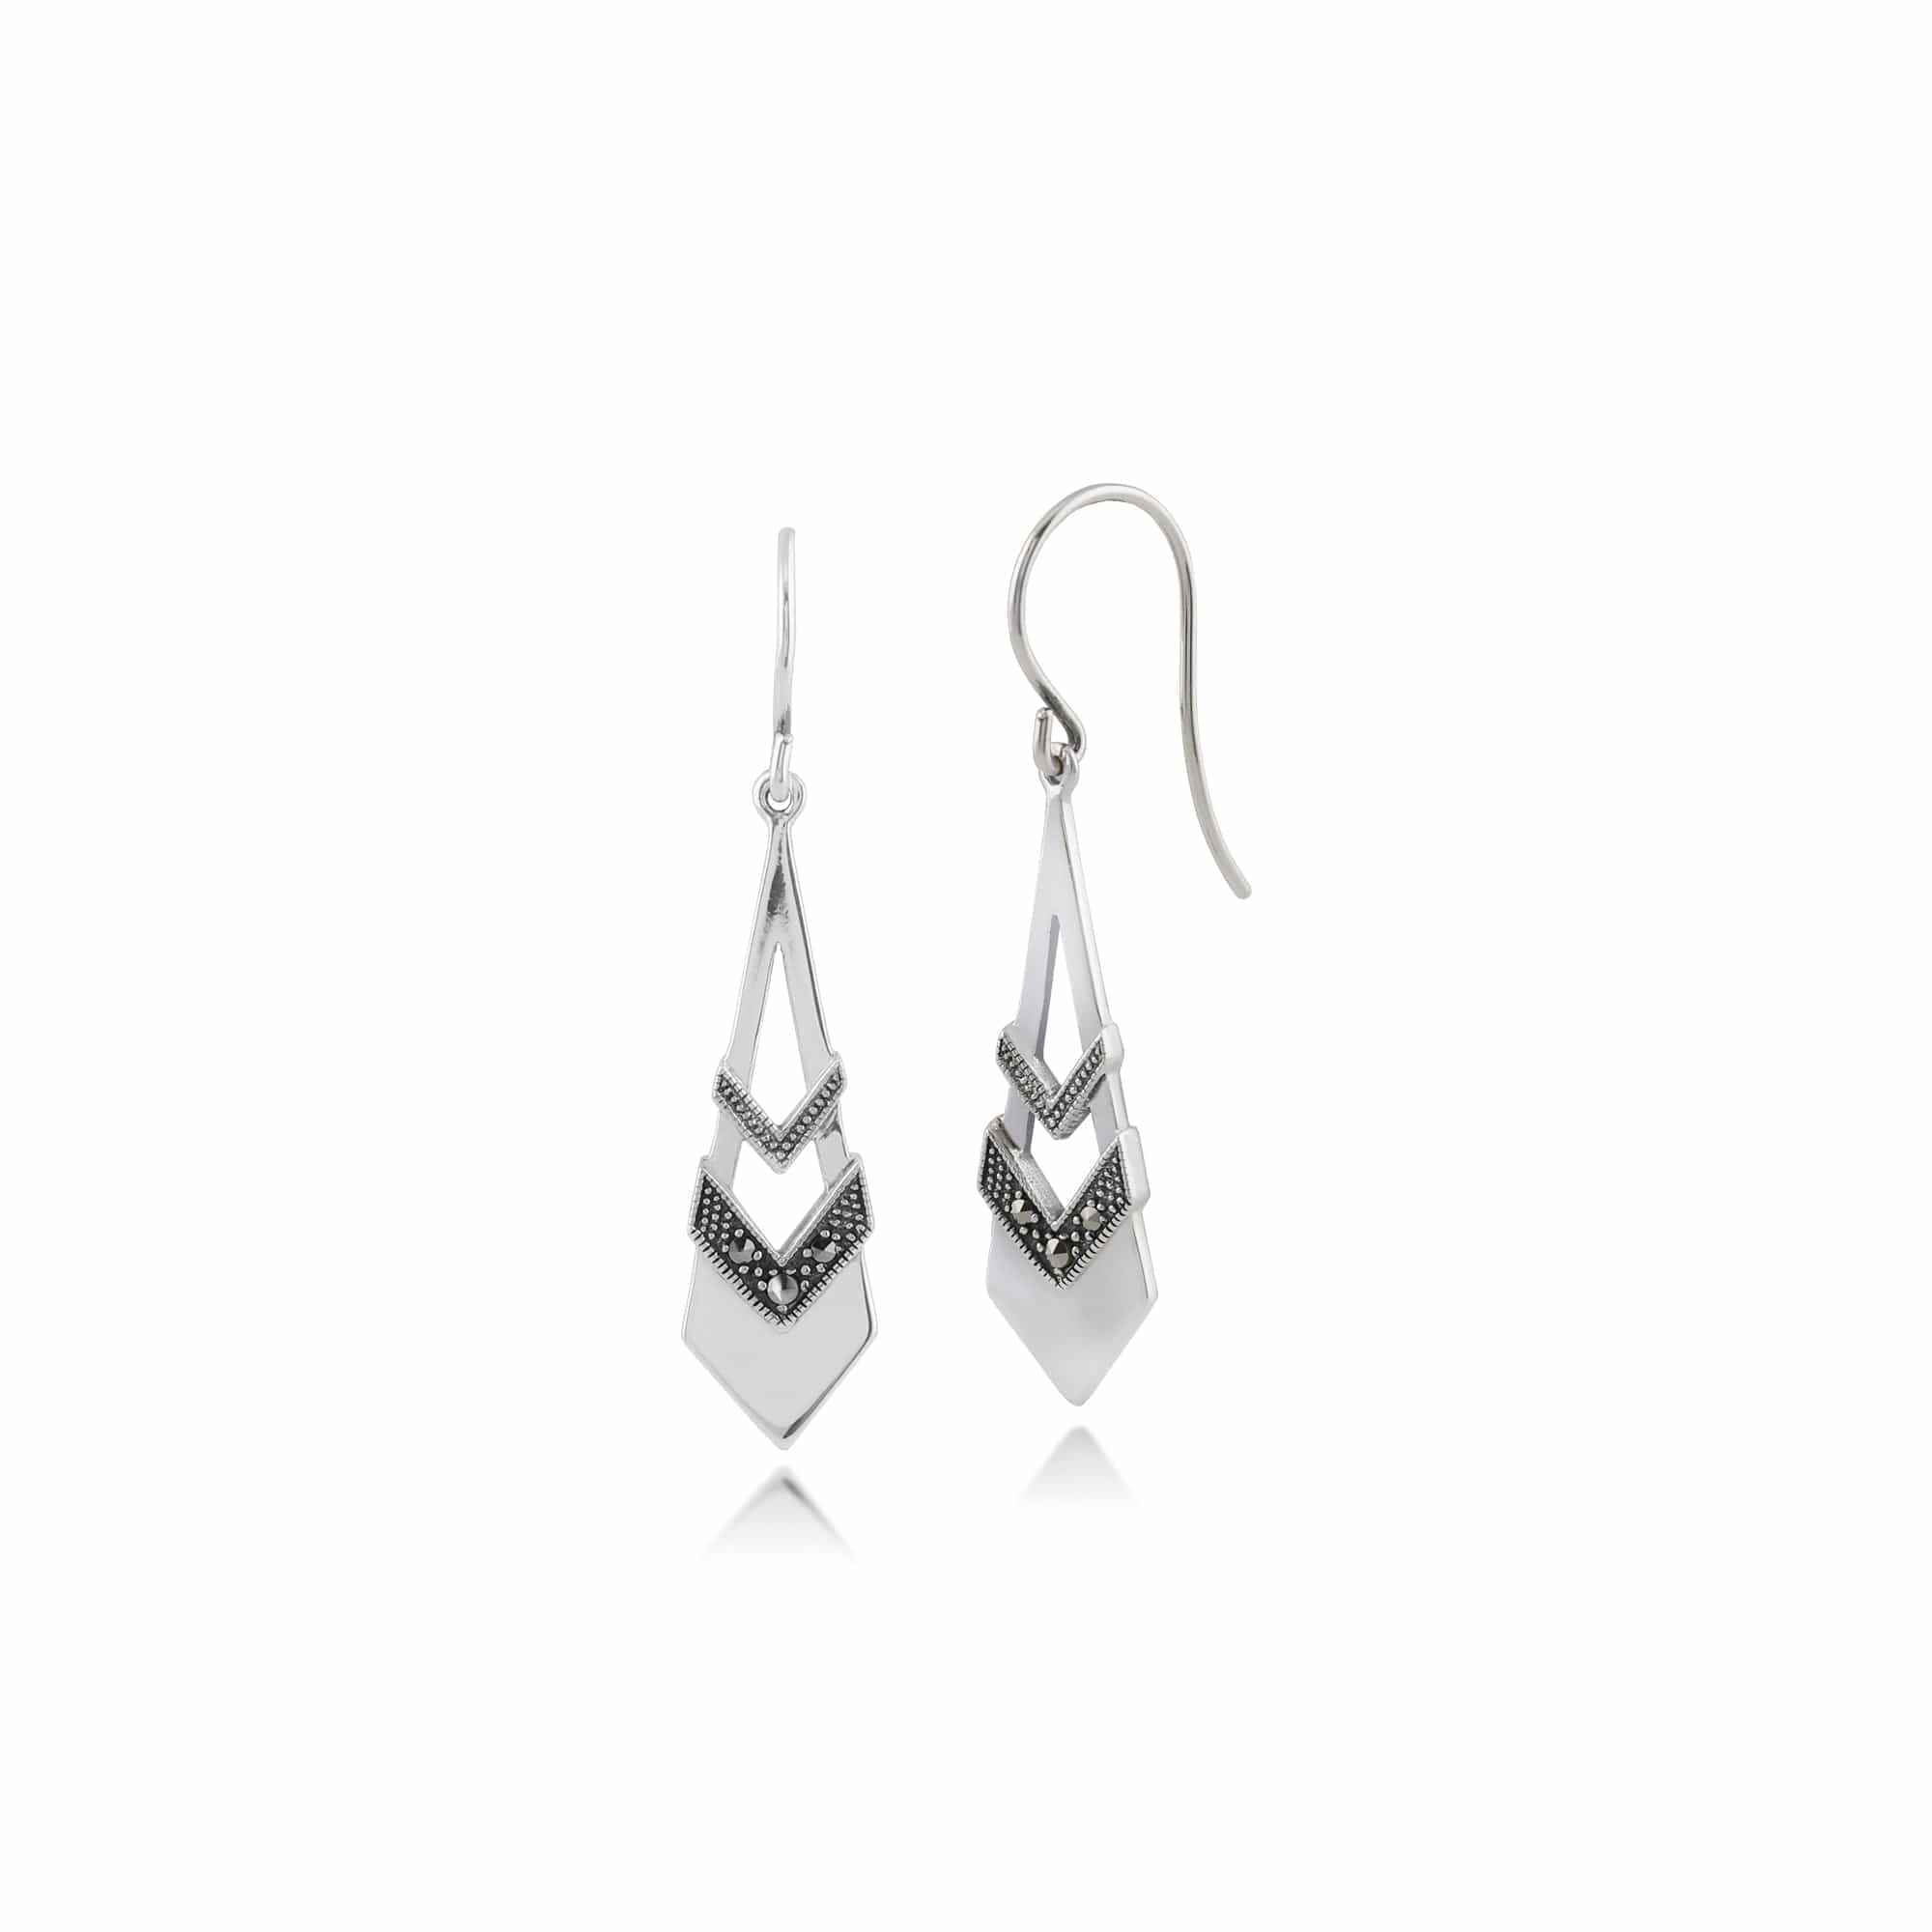 Art Deco Style Round Opal & Marcasite Open Work Fan Drop Earrings in 925 Sterling Silver - Gemondo